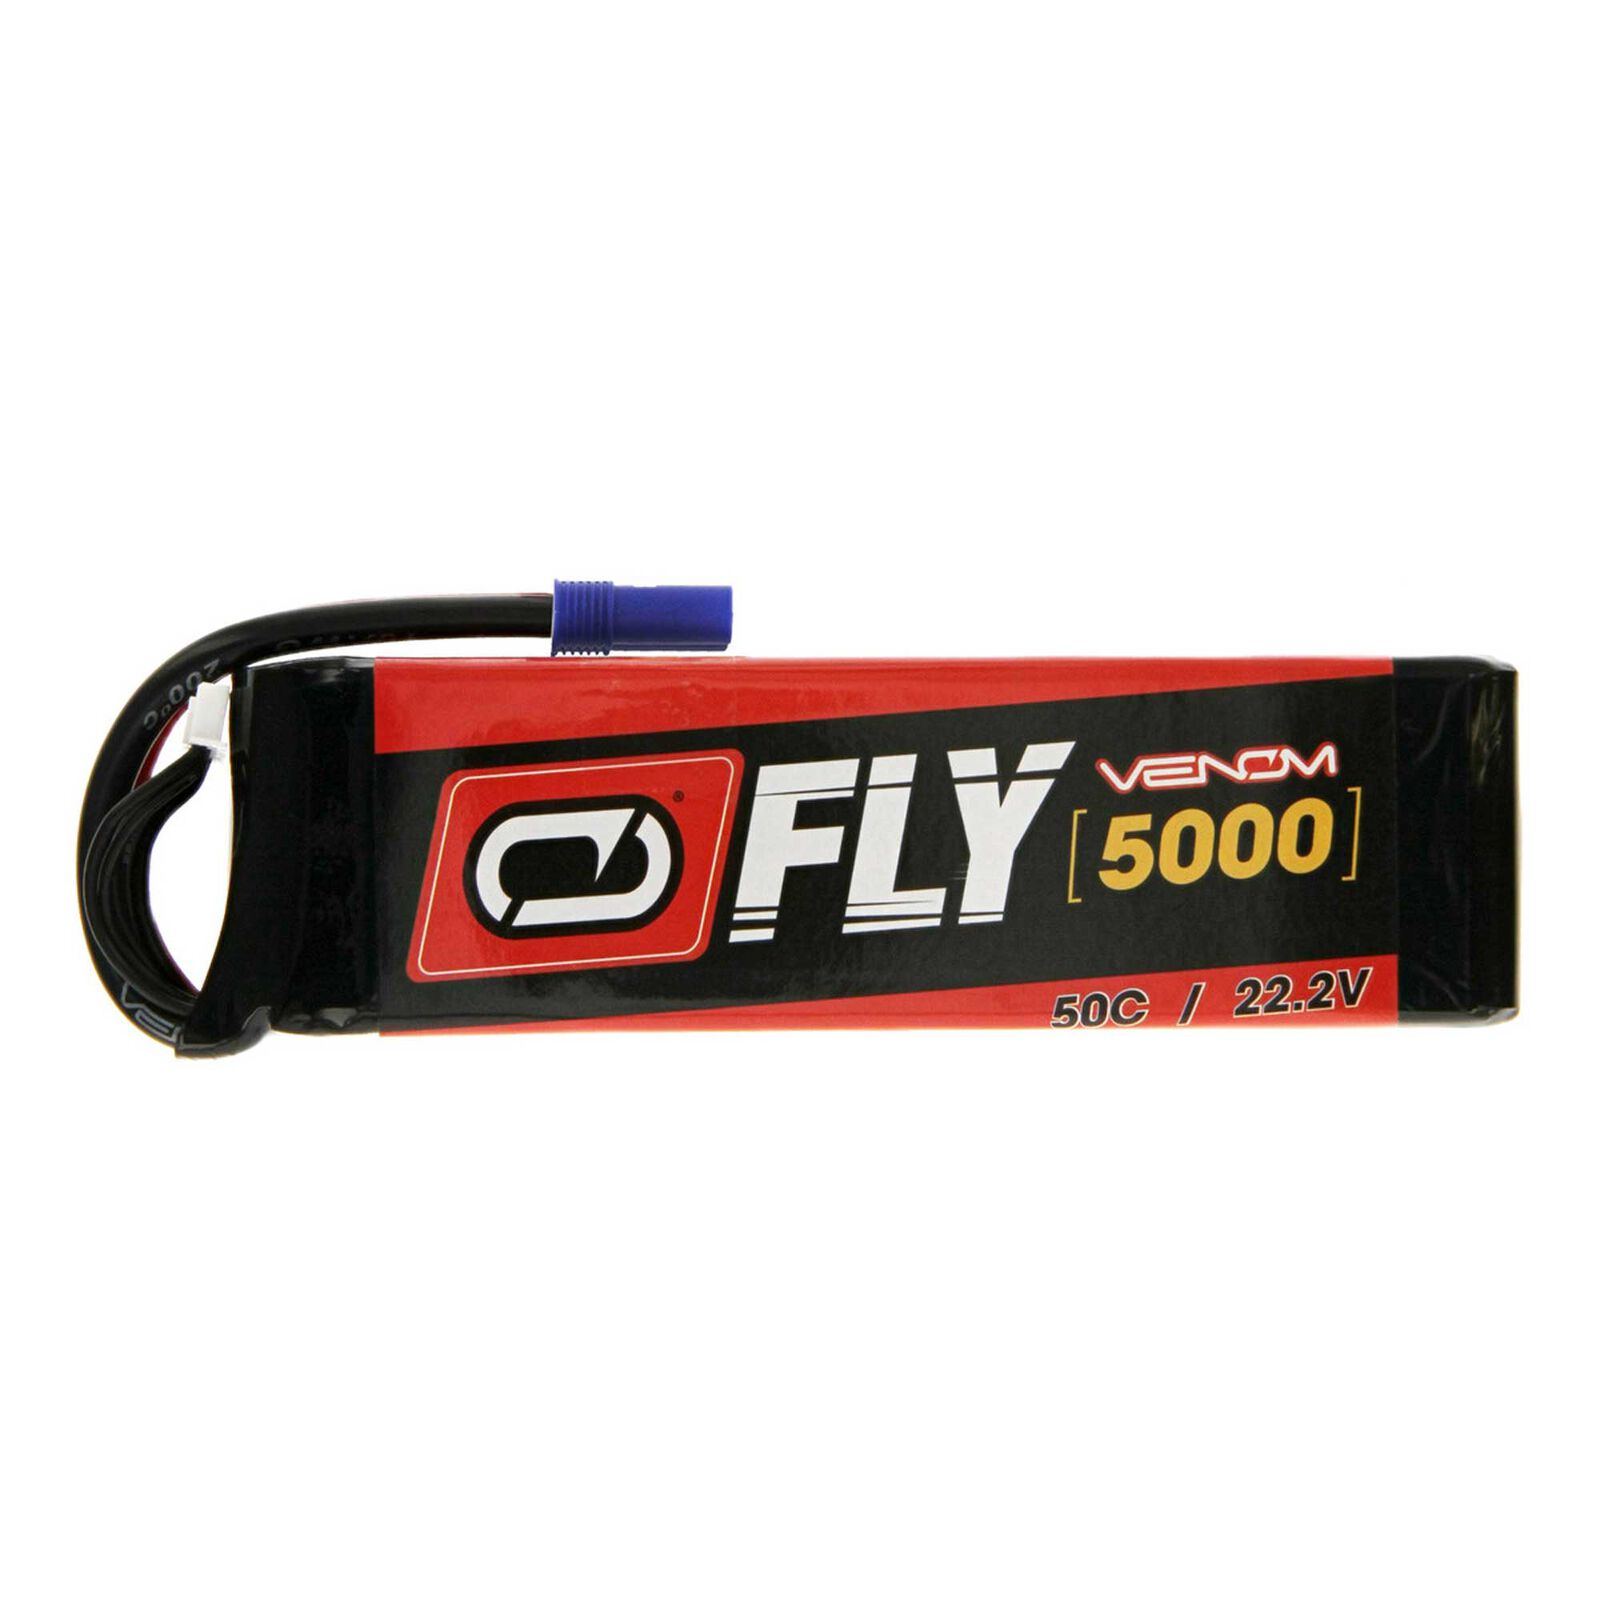 22.2V 5000mAh 50C 6S Fly LiPo Battery: EC5